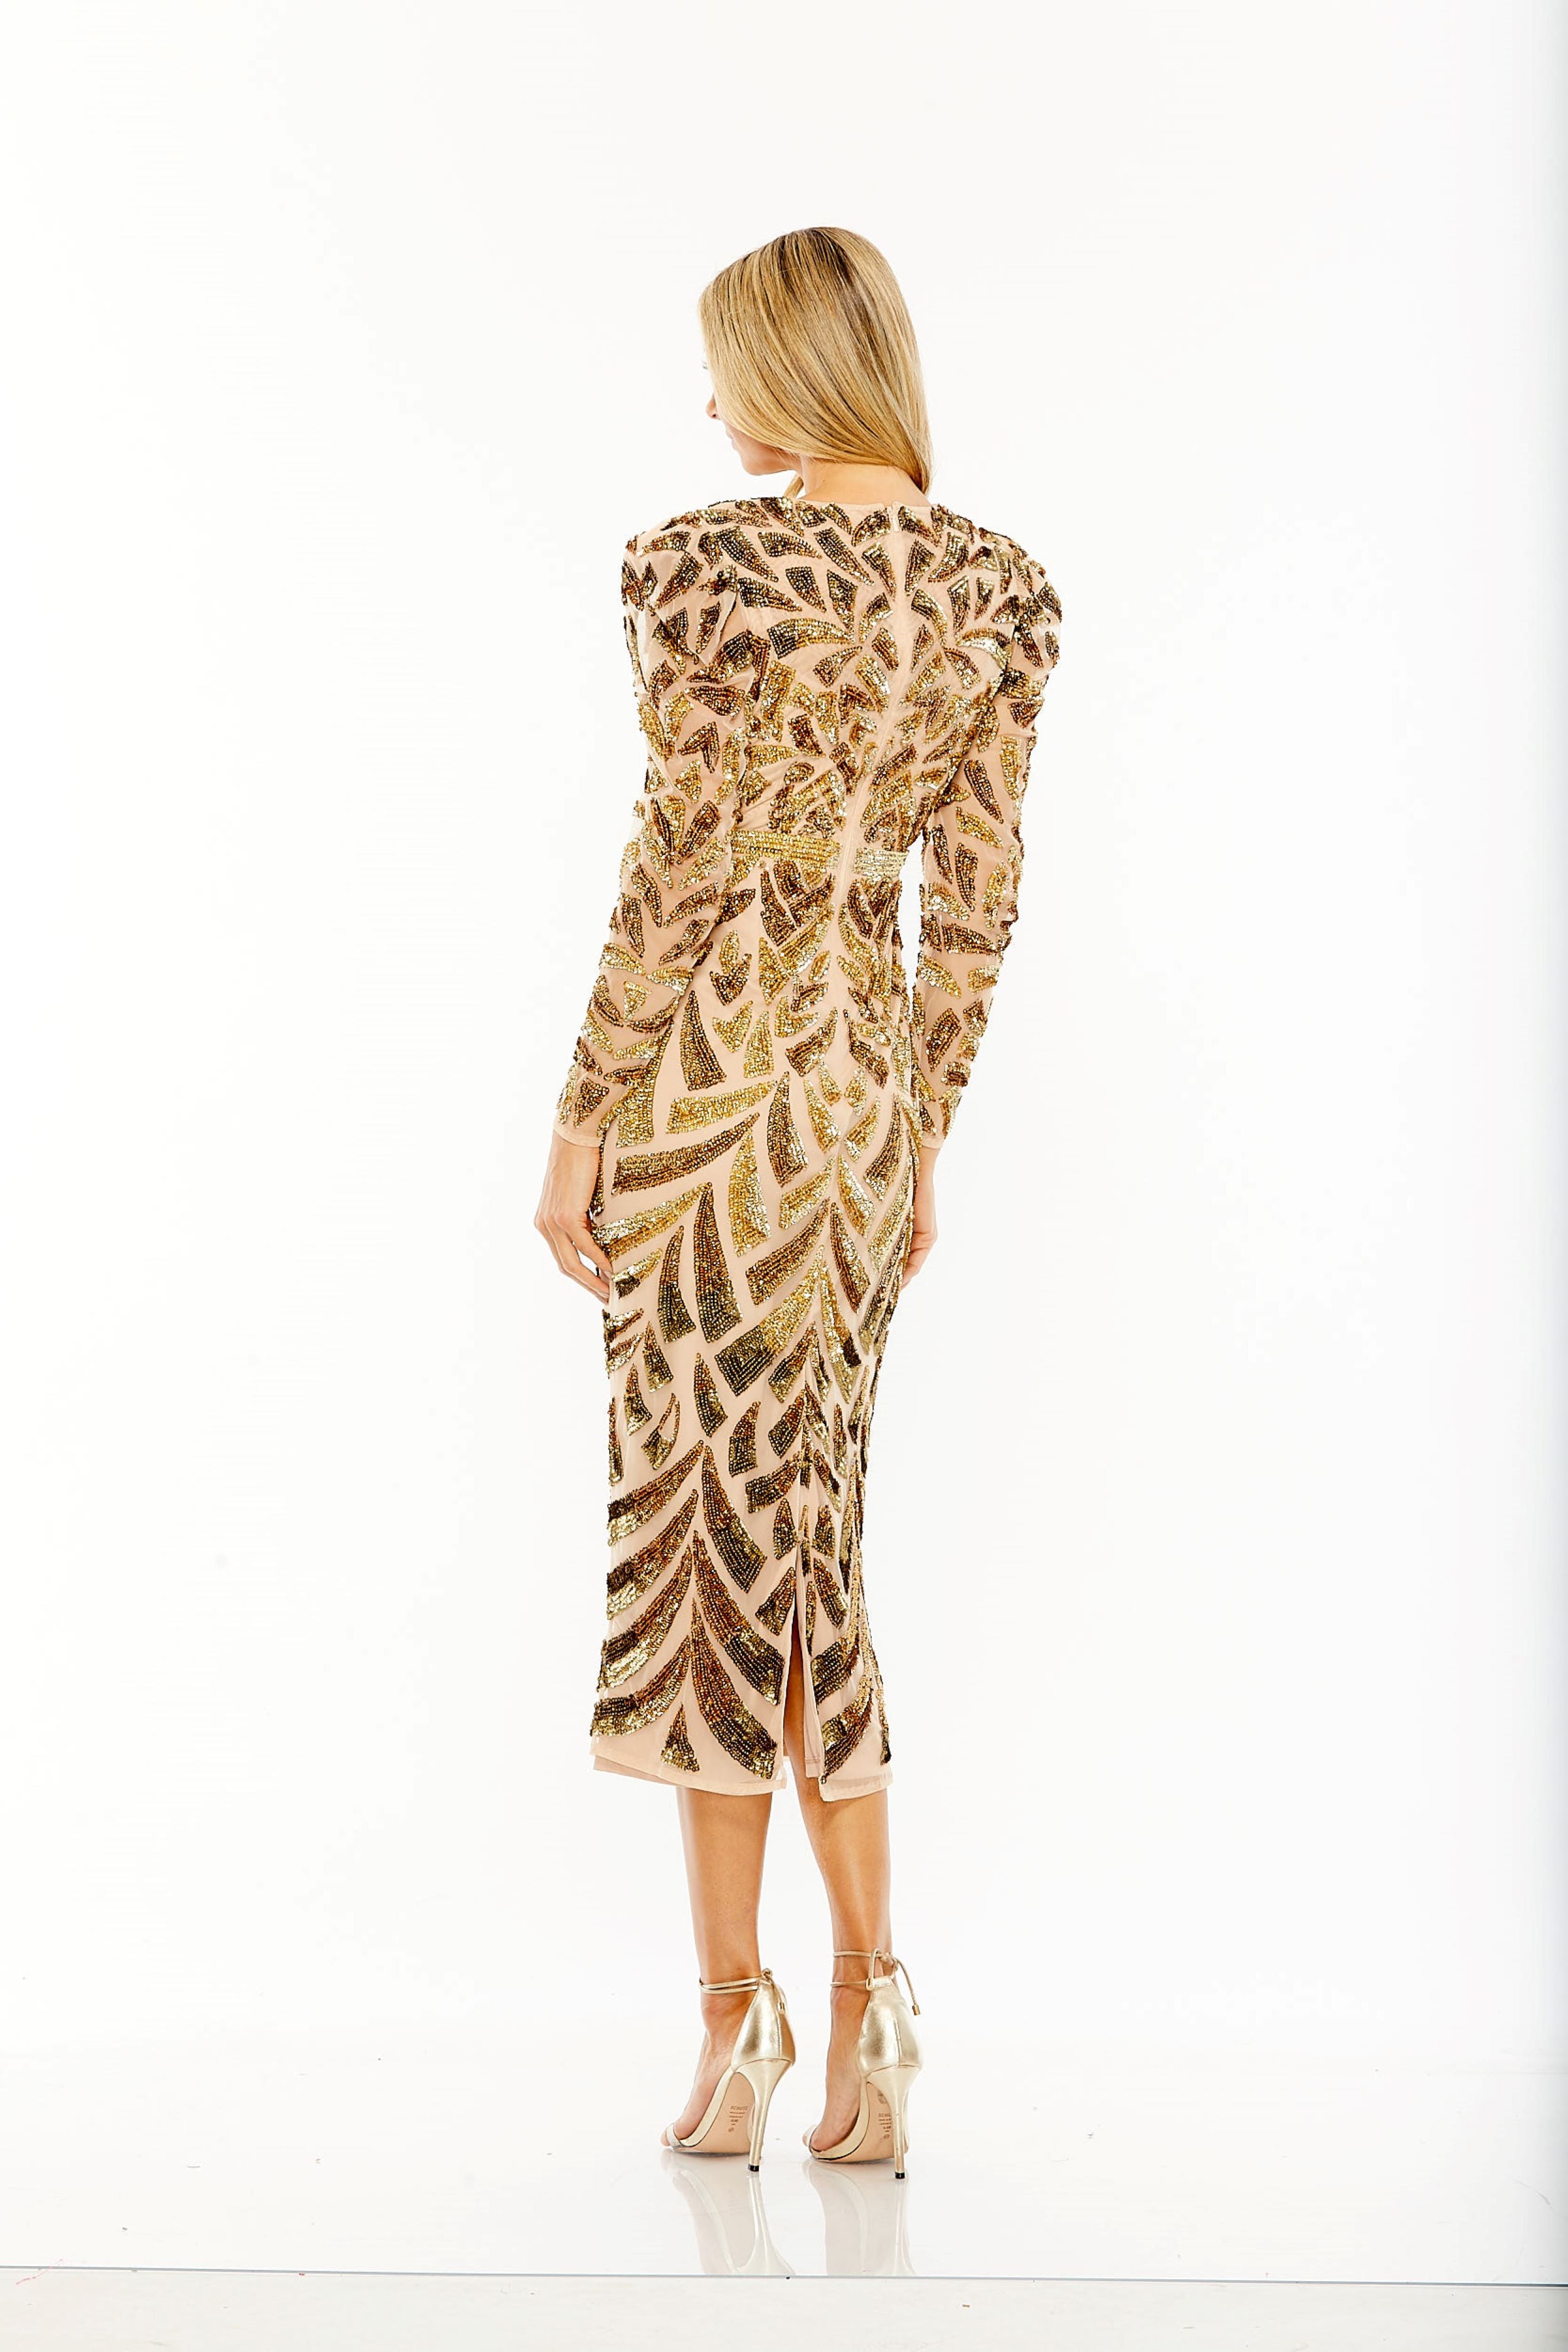 Long Sleeve Sequin Embellished Dress | Sample | Sz. 2